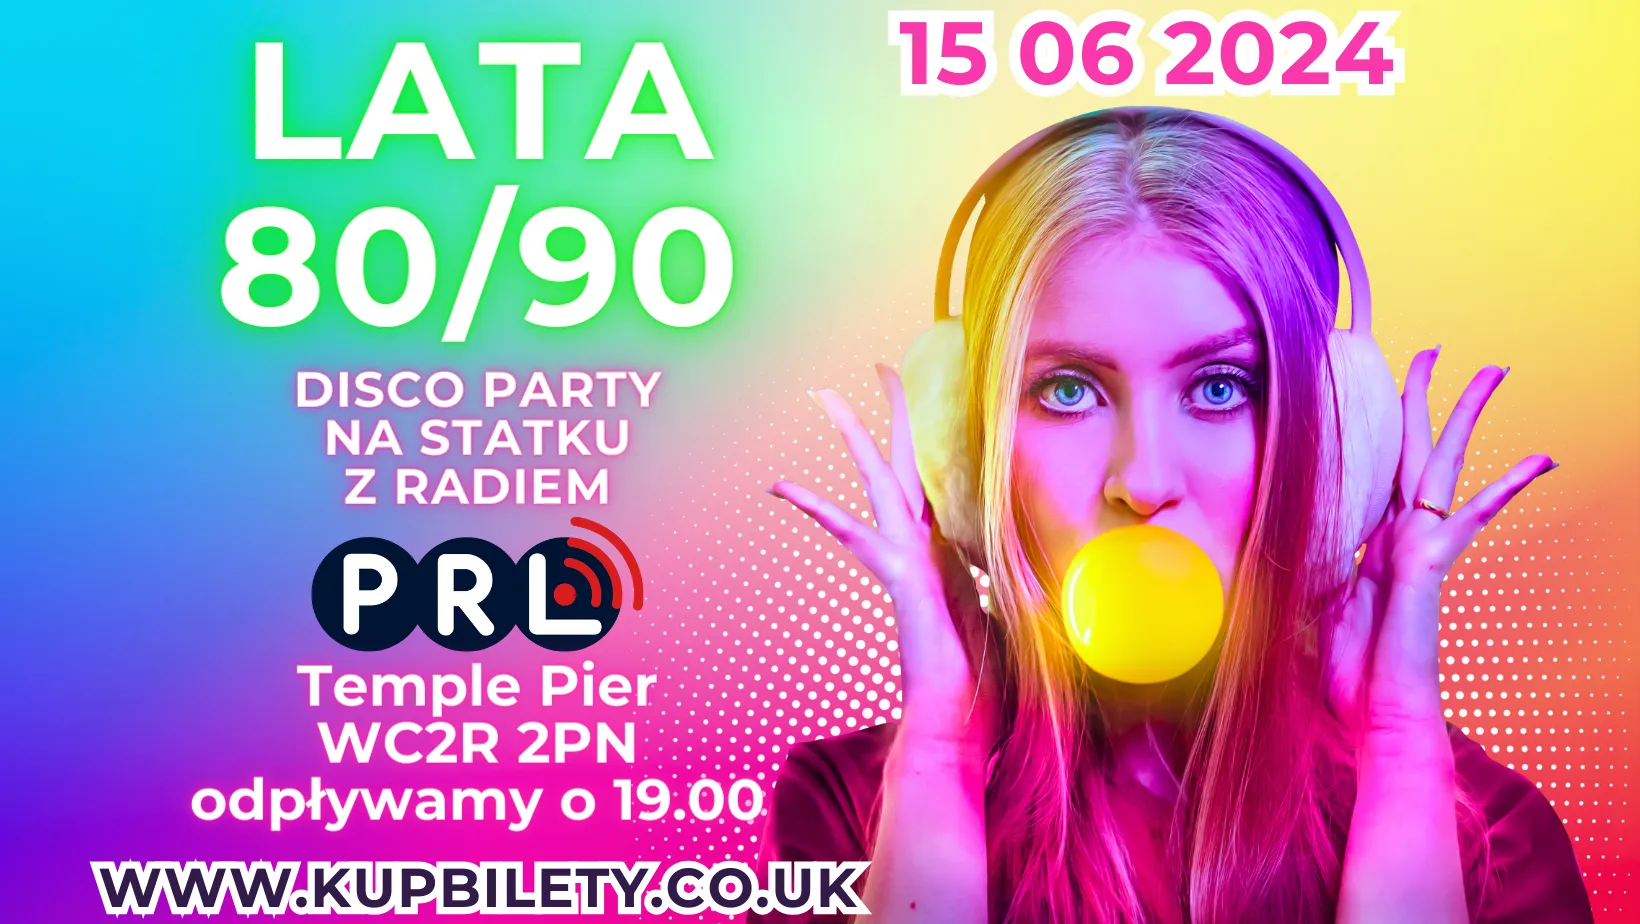 Disco Party Na Statku z Radiem PRL - Lata 80/90 - 15 Czerwca 2024